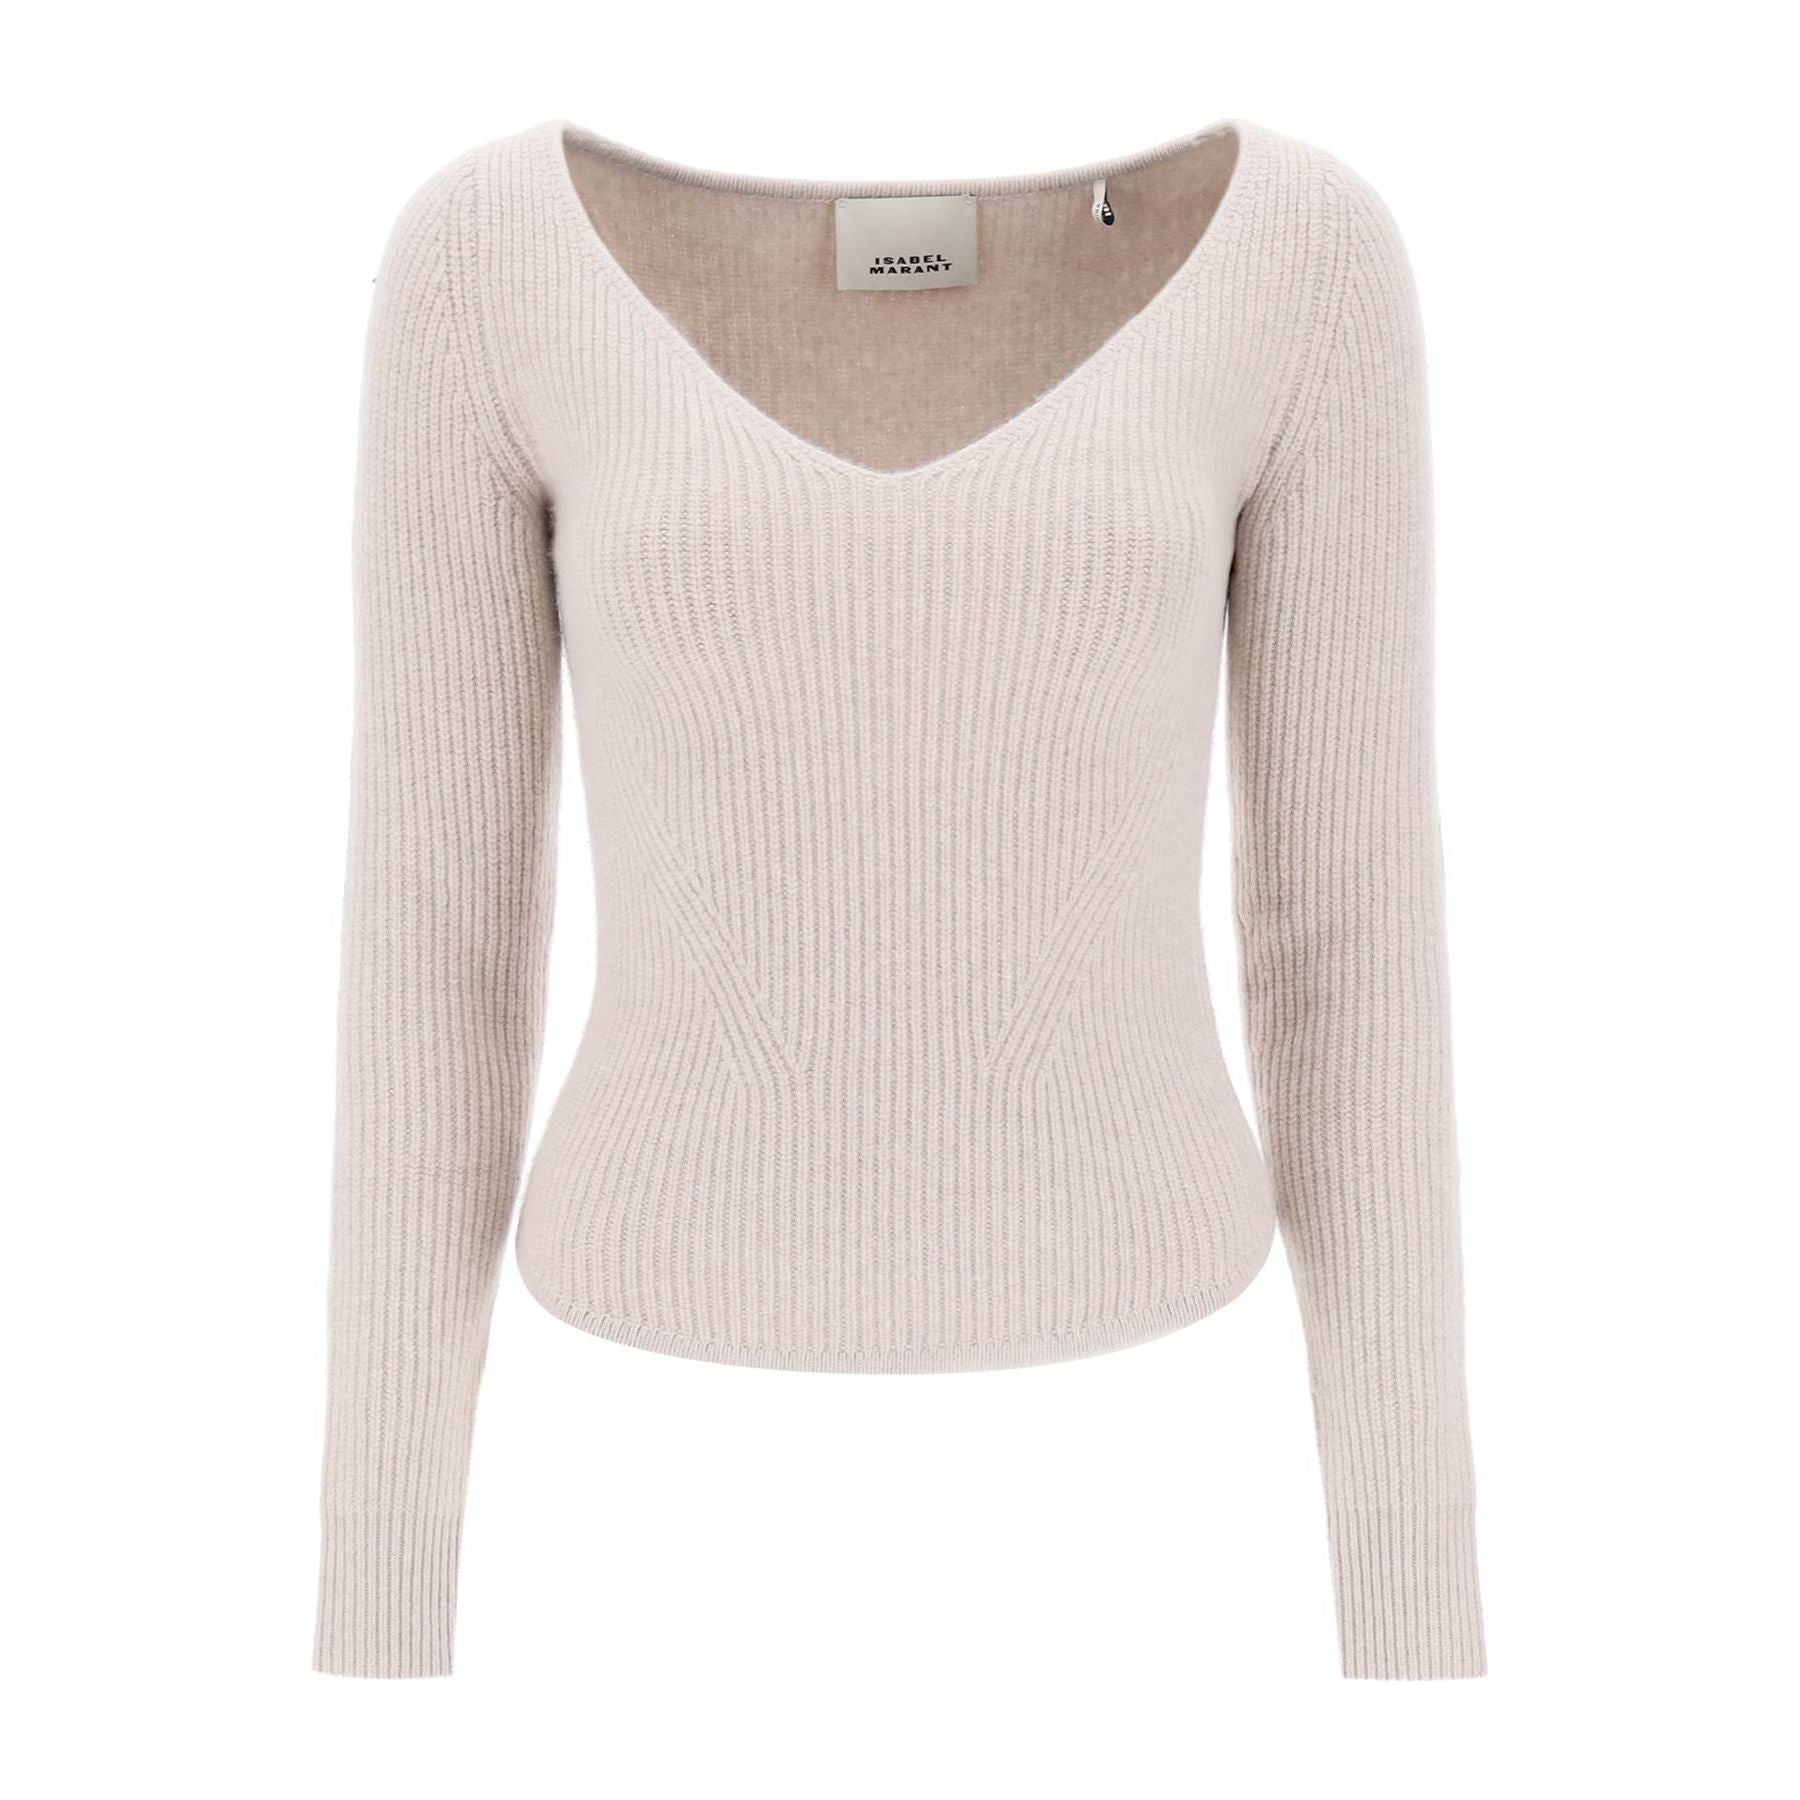 Bricelia Merino Wool And Cashmere Sweater